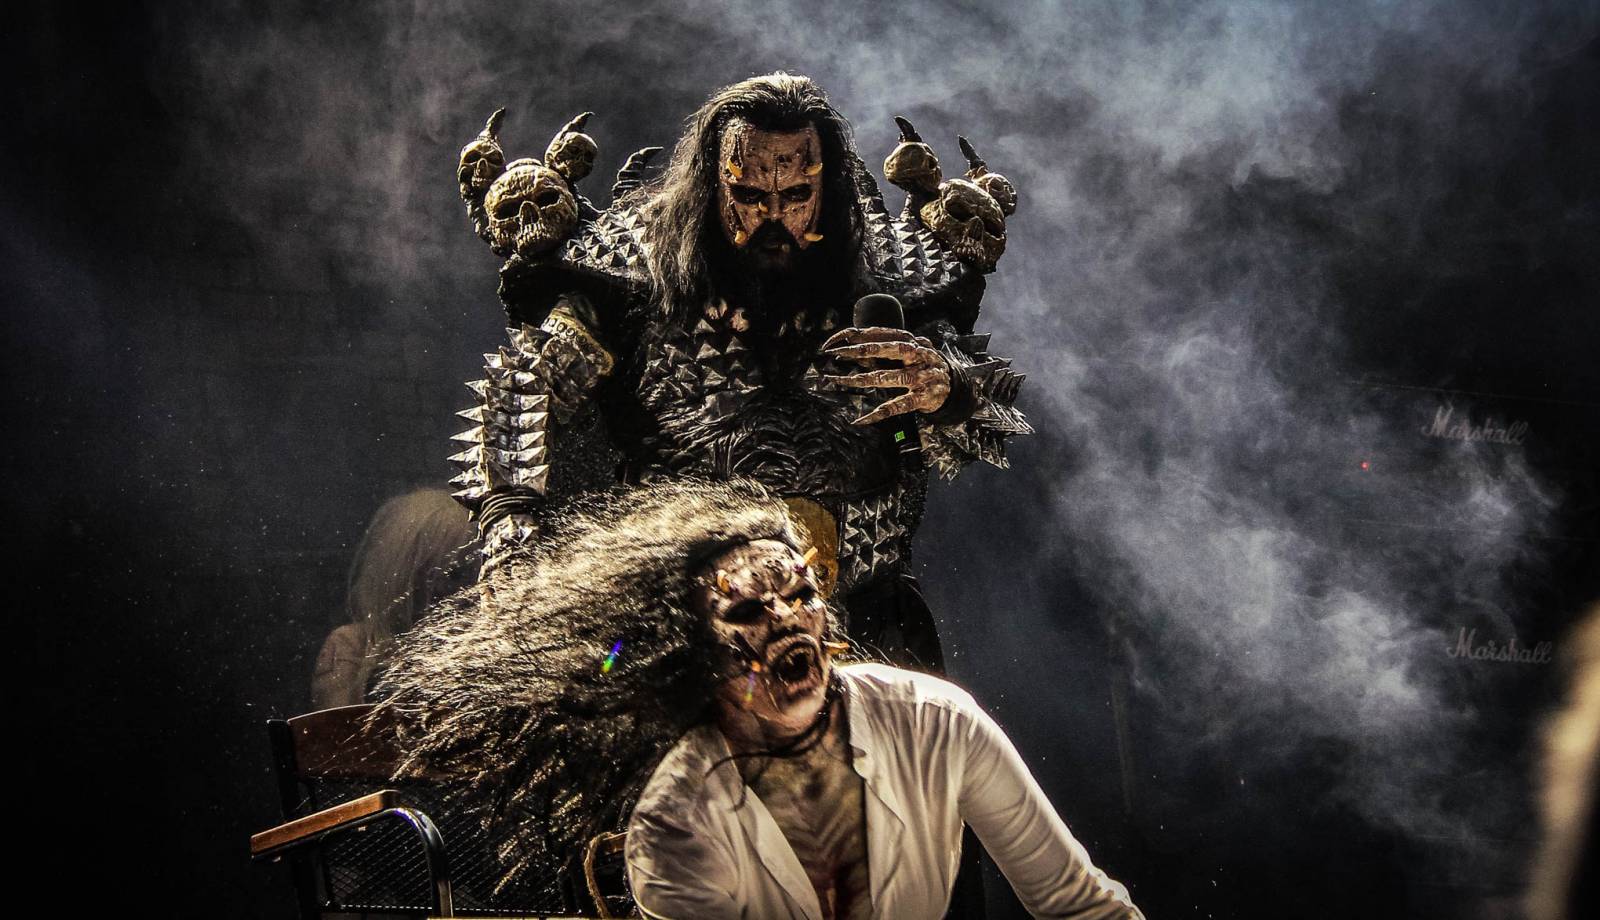 Masters Of Rock přivítal další hvězdy: Lordi strašili svými převleky, Avatar přivezl metalový cirkus